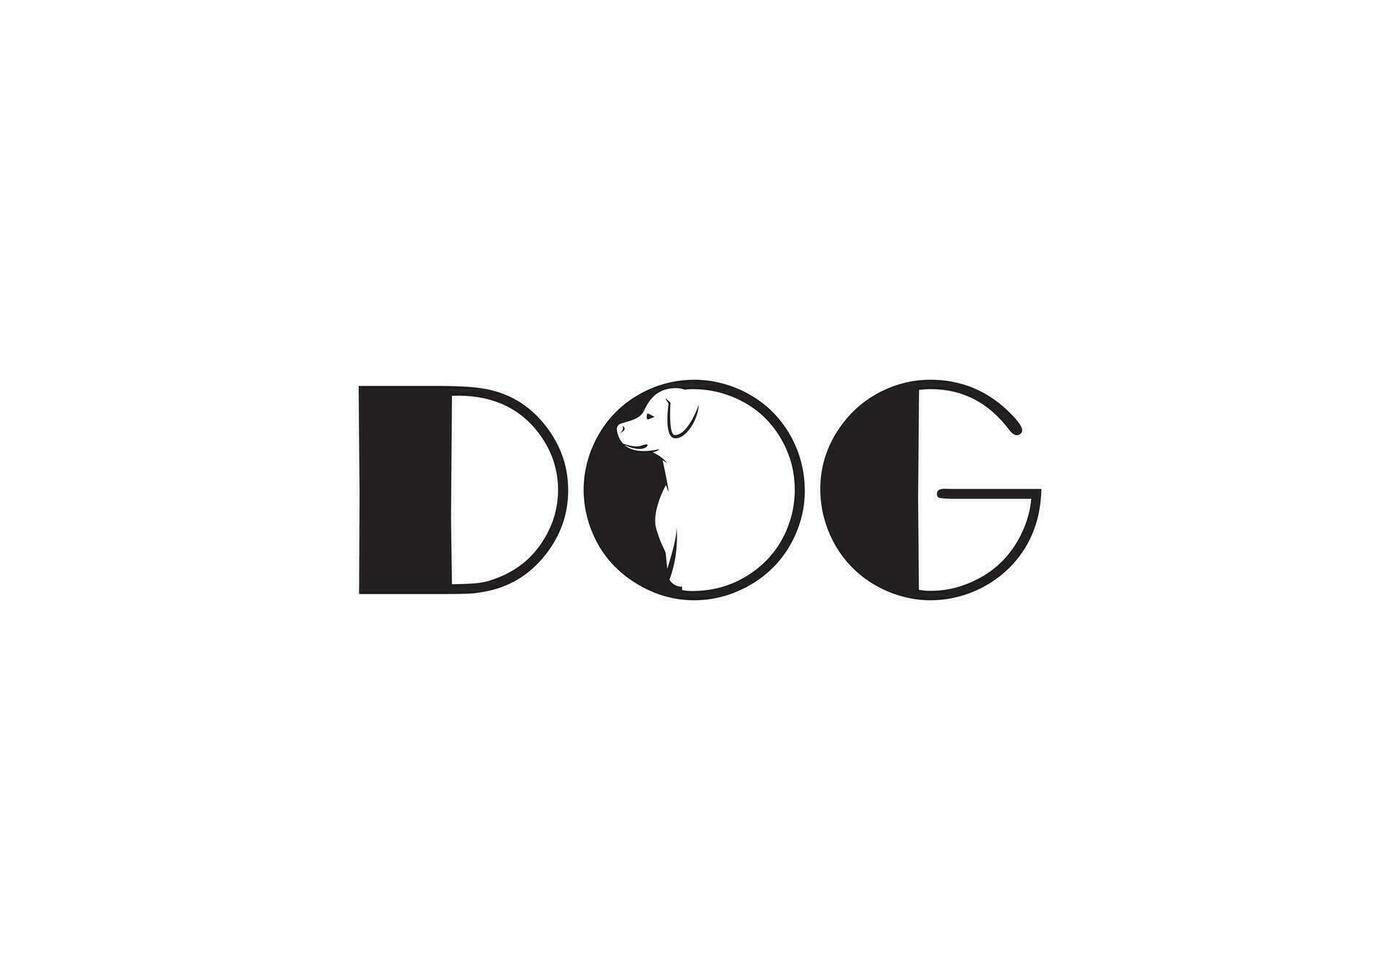 criativo cachorro e texto adicionado animal logotipo ícone Projeto vetor